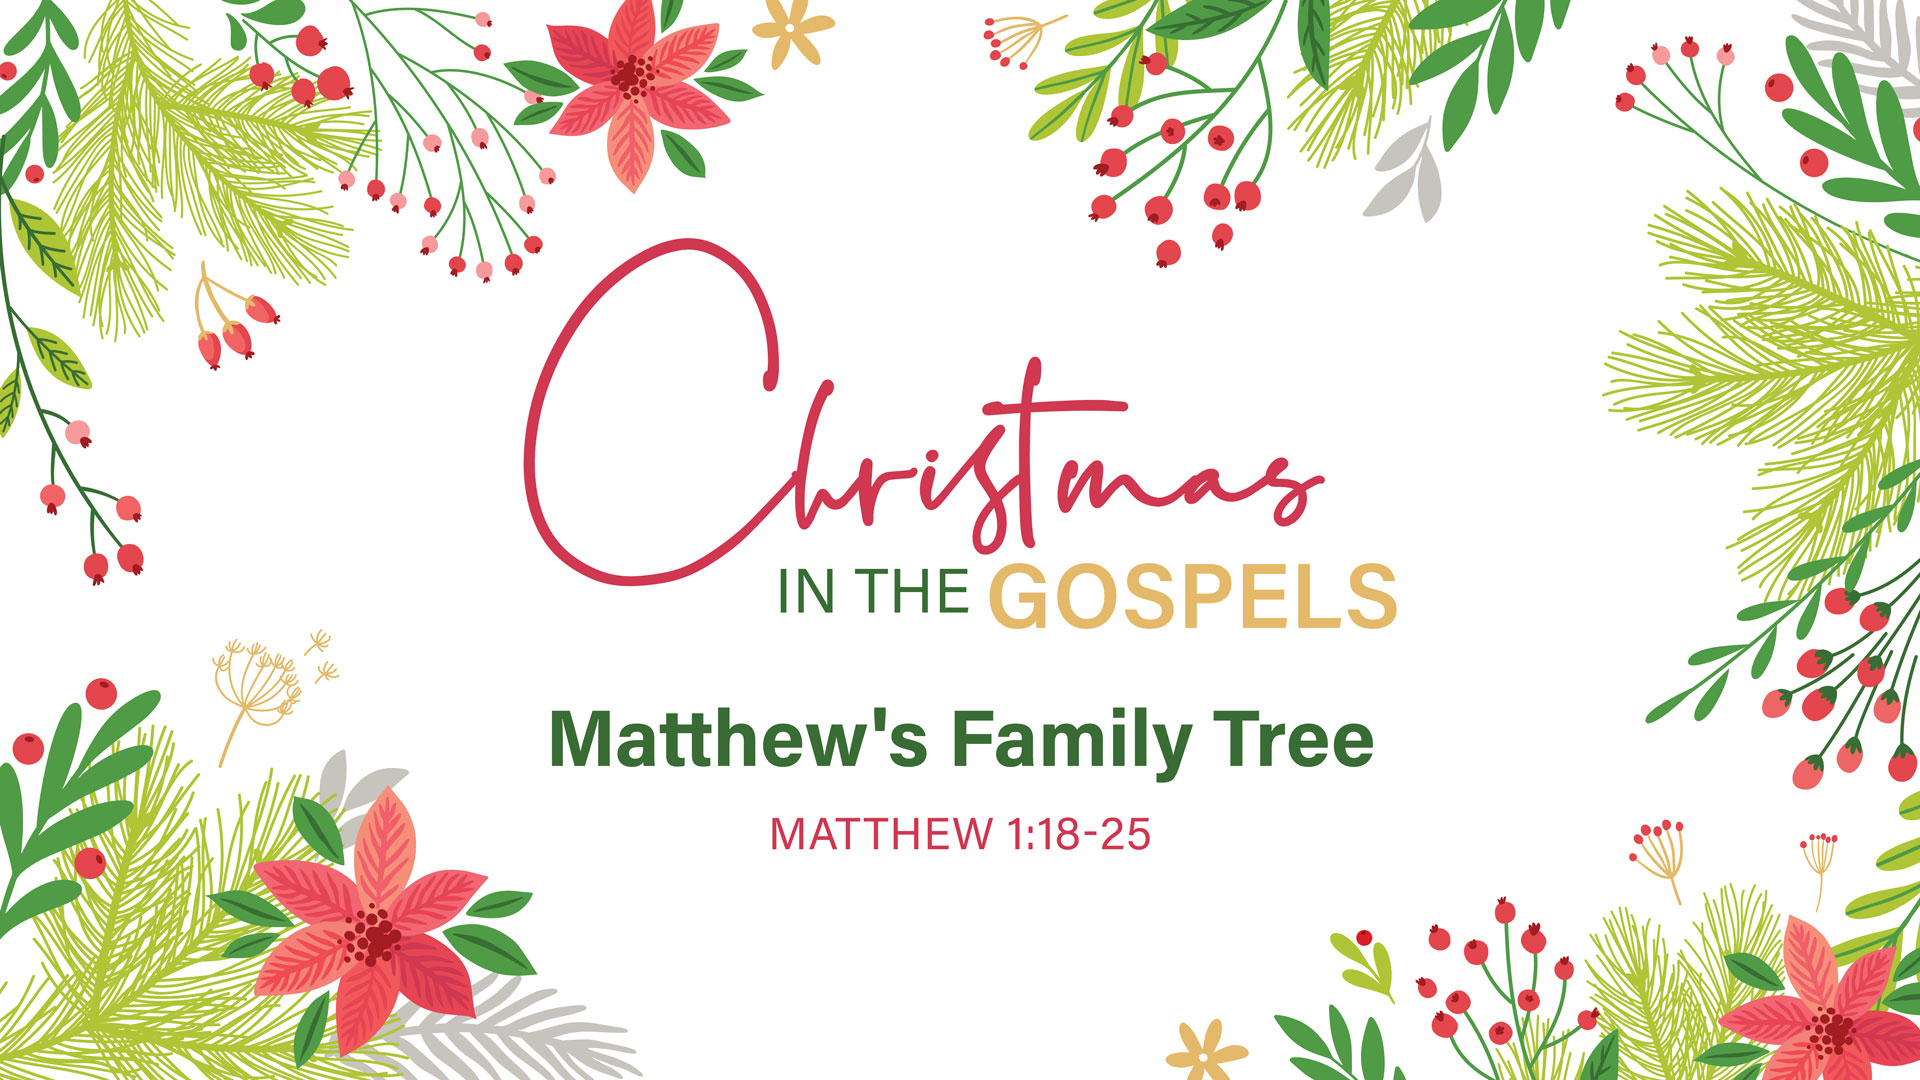 Christmas in the Gospels: Matthew's Family Tree